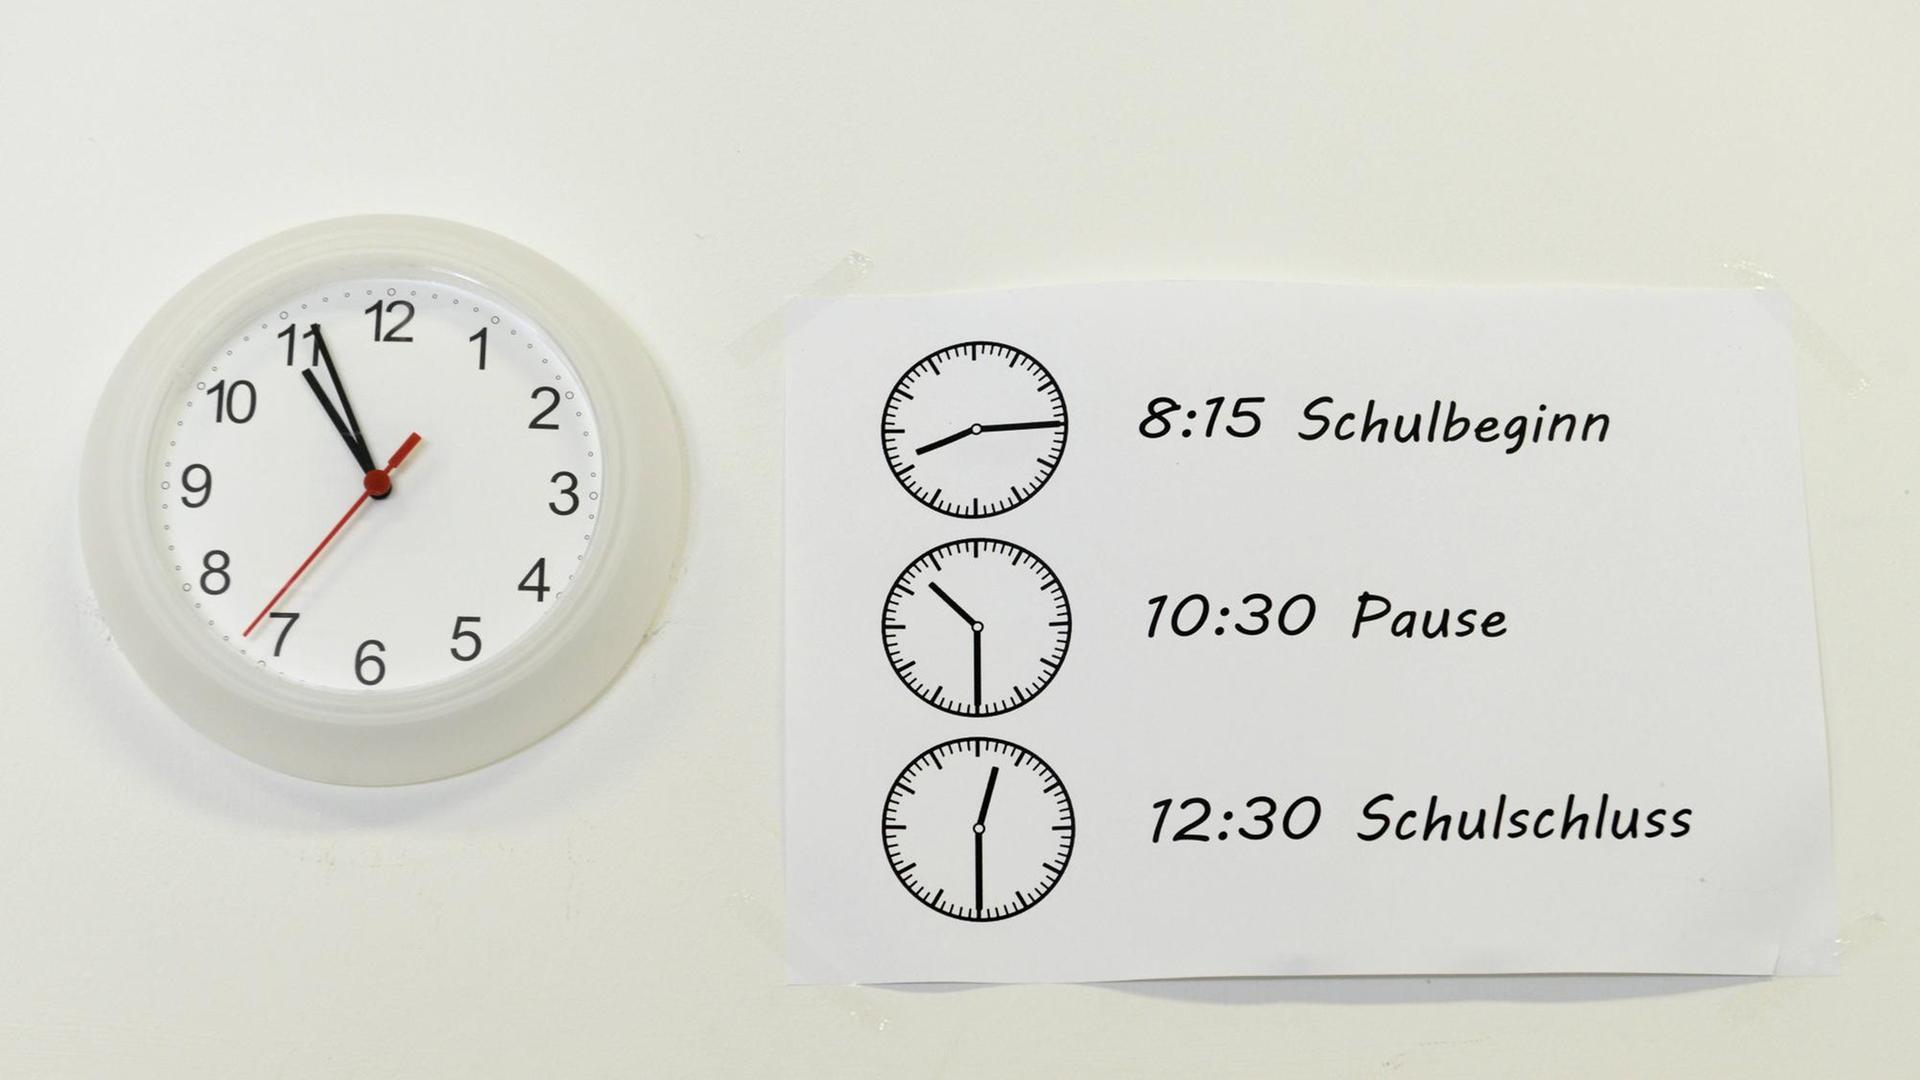 Schulstart- und Pausenzeiten stehen auf einem Zettel, der neben einer Uhr hängt.